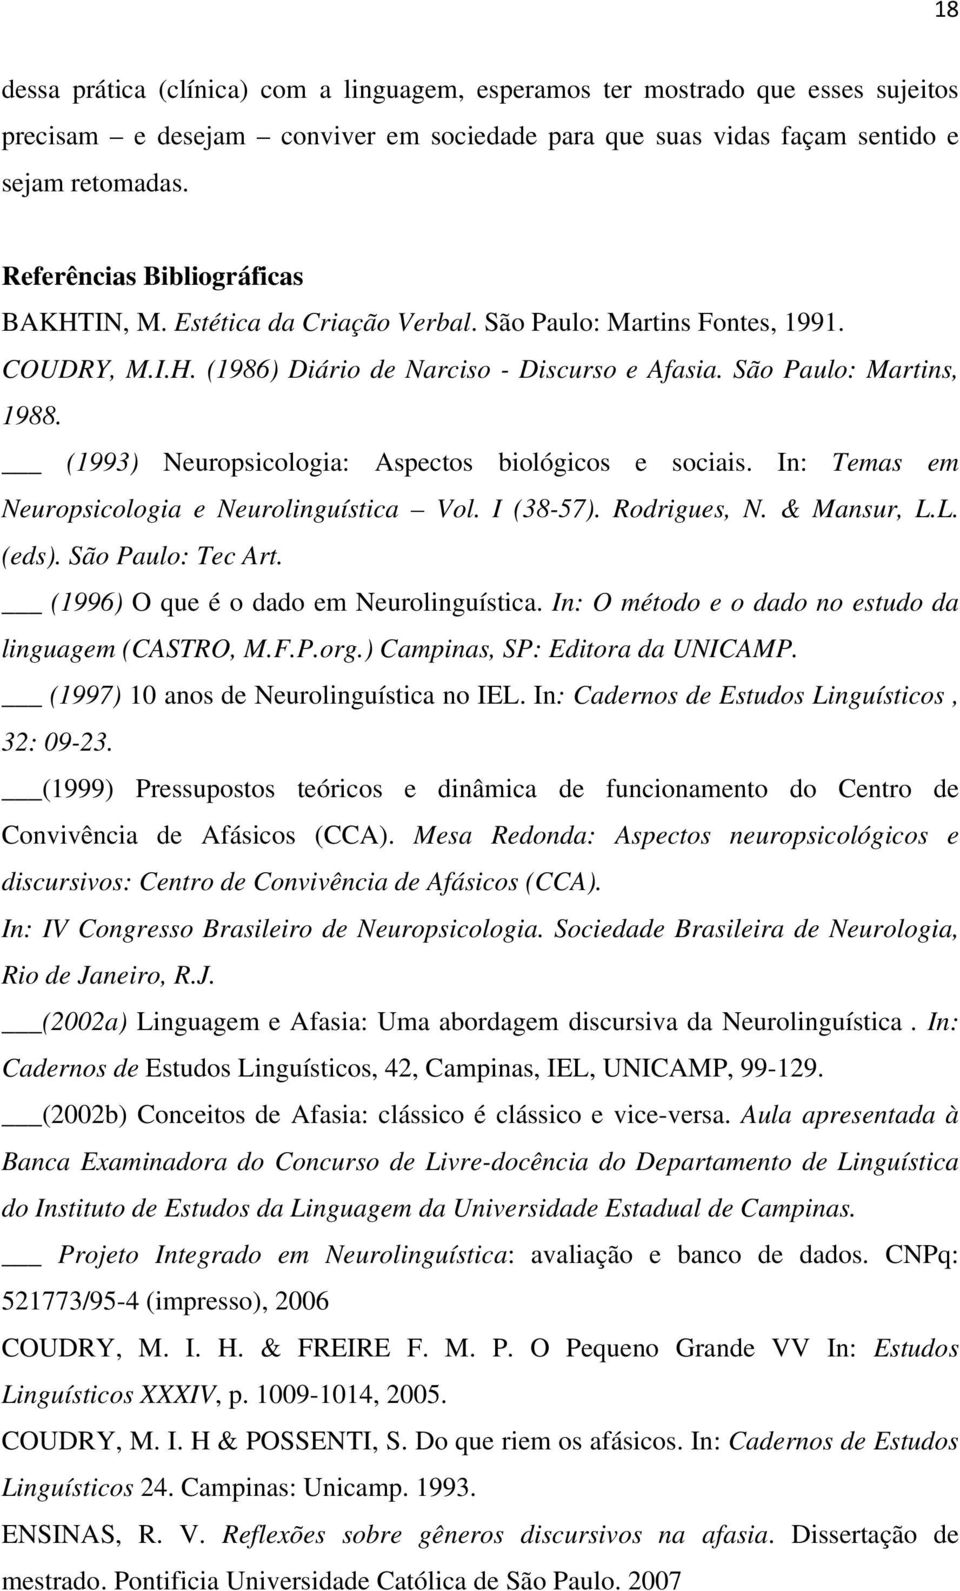 (1993) Neuropsicologia: Aspectos biológicos e sociais. In: Temas em Neuropsicologia e Neurolinguística Vol. I (38-57). Rodrigues, N. & Mansur, L.L. (eds). São Paulo: Tec Art.